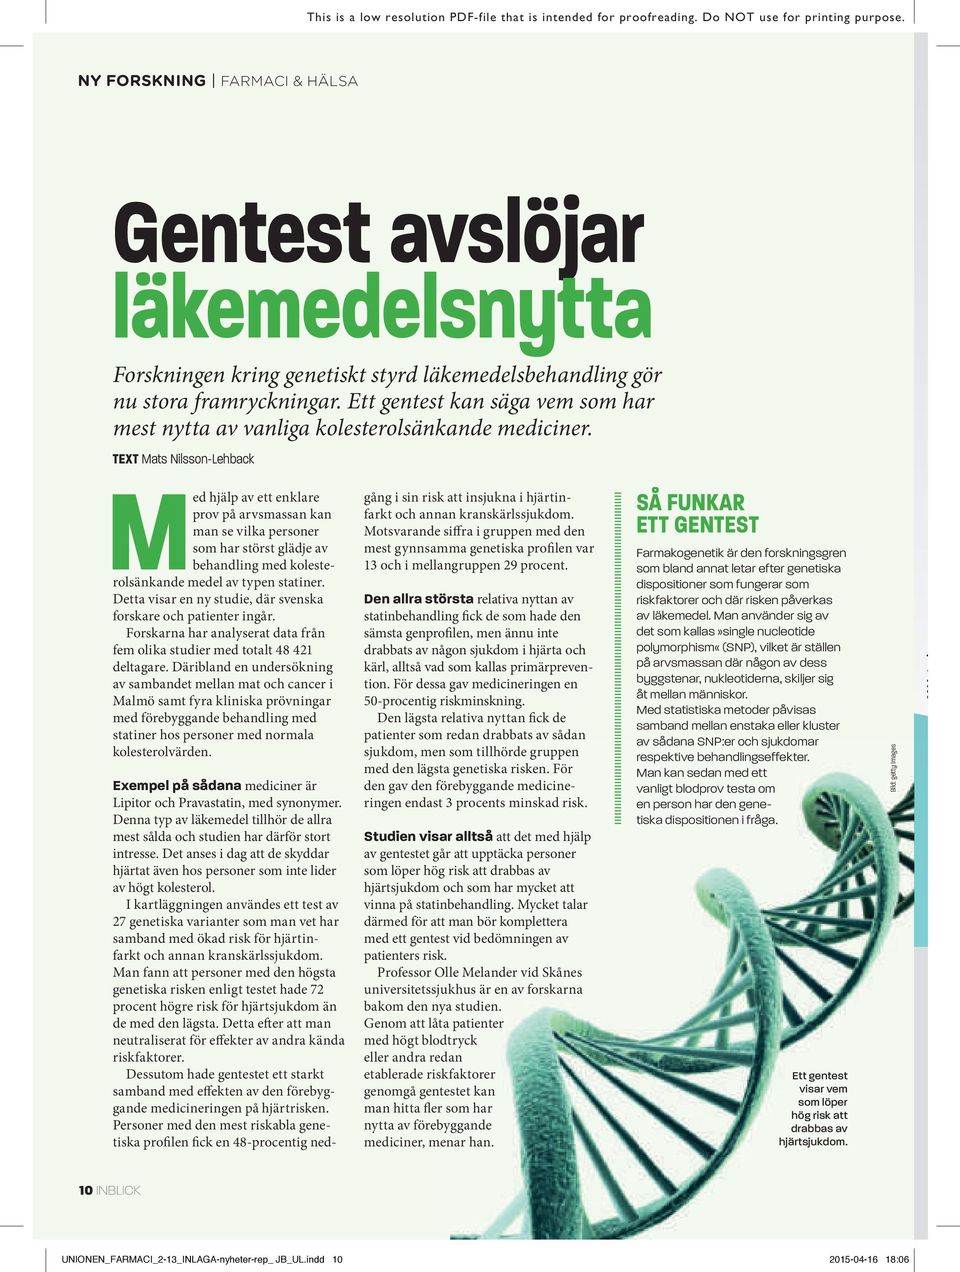 TEXT Mats Nilsson-Lehback Med hjälp av ett enklare prov på arvsmassan kan man se vilka personer som har störst glädje av behandling med kolesterolsänkande medel av typen statiner.